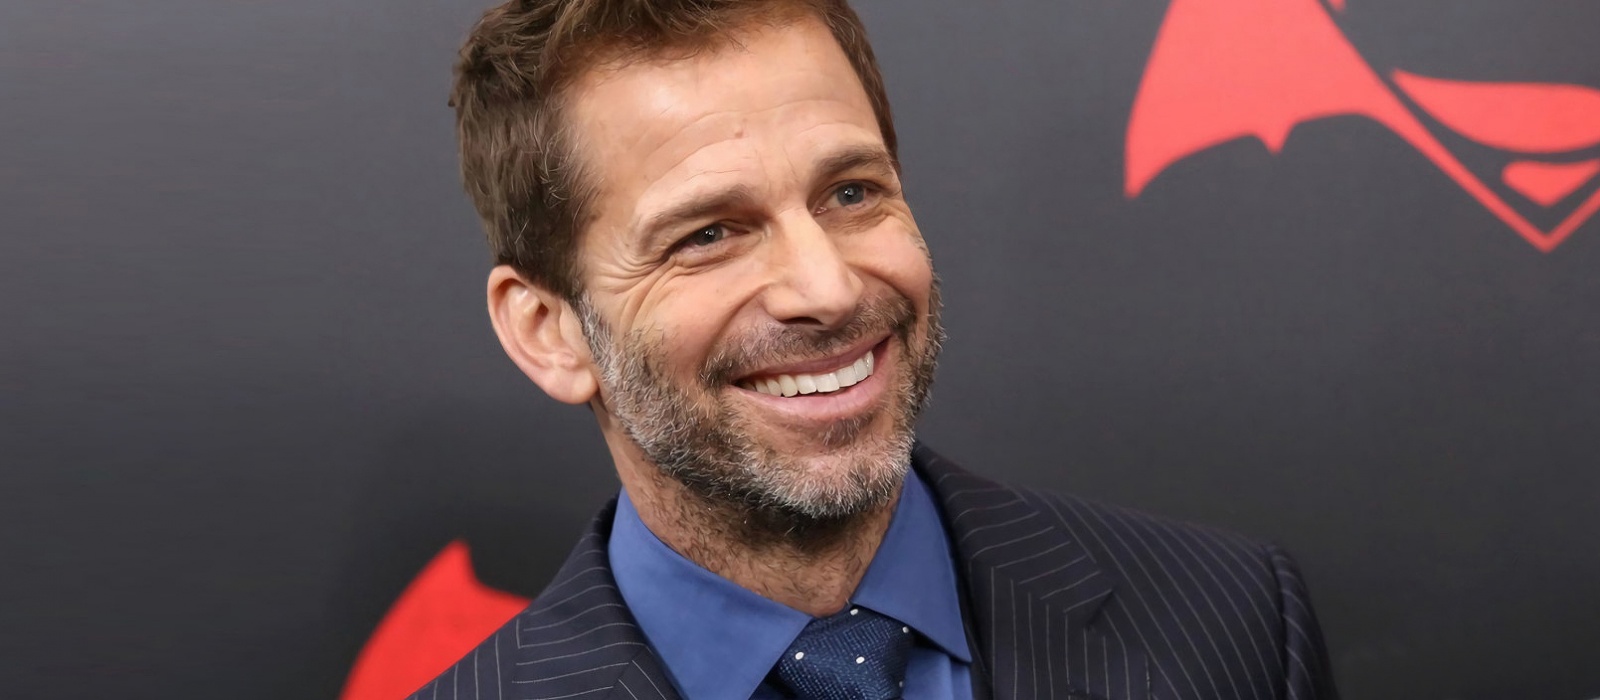 Zack Snyder dará luz verde a la adaptación cinematográfica de "Gears of War" de la mano del creador del juego, Cliff Blesinski, pero sólo con una importante condición